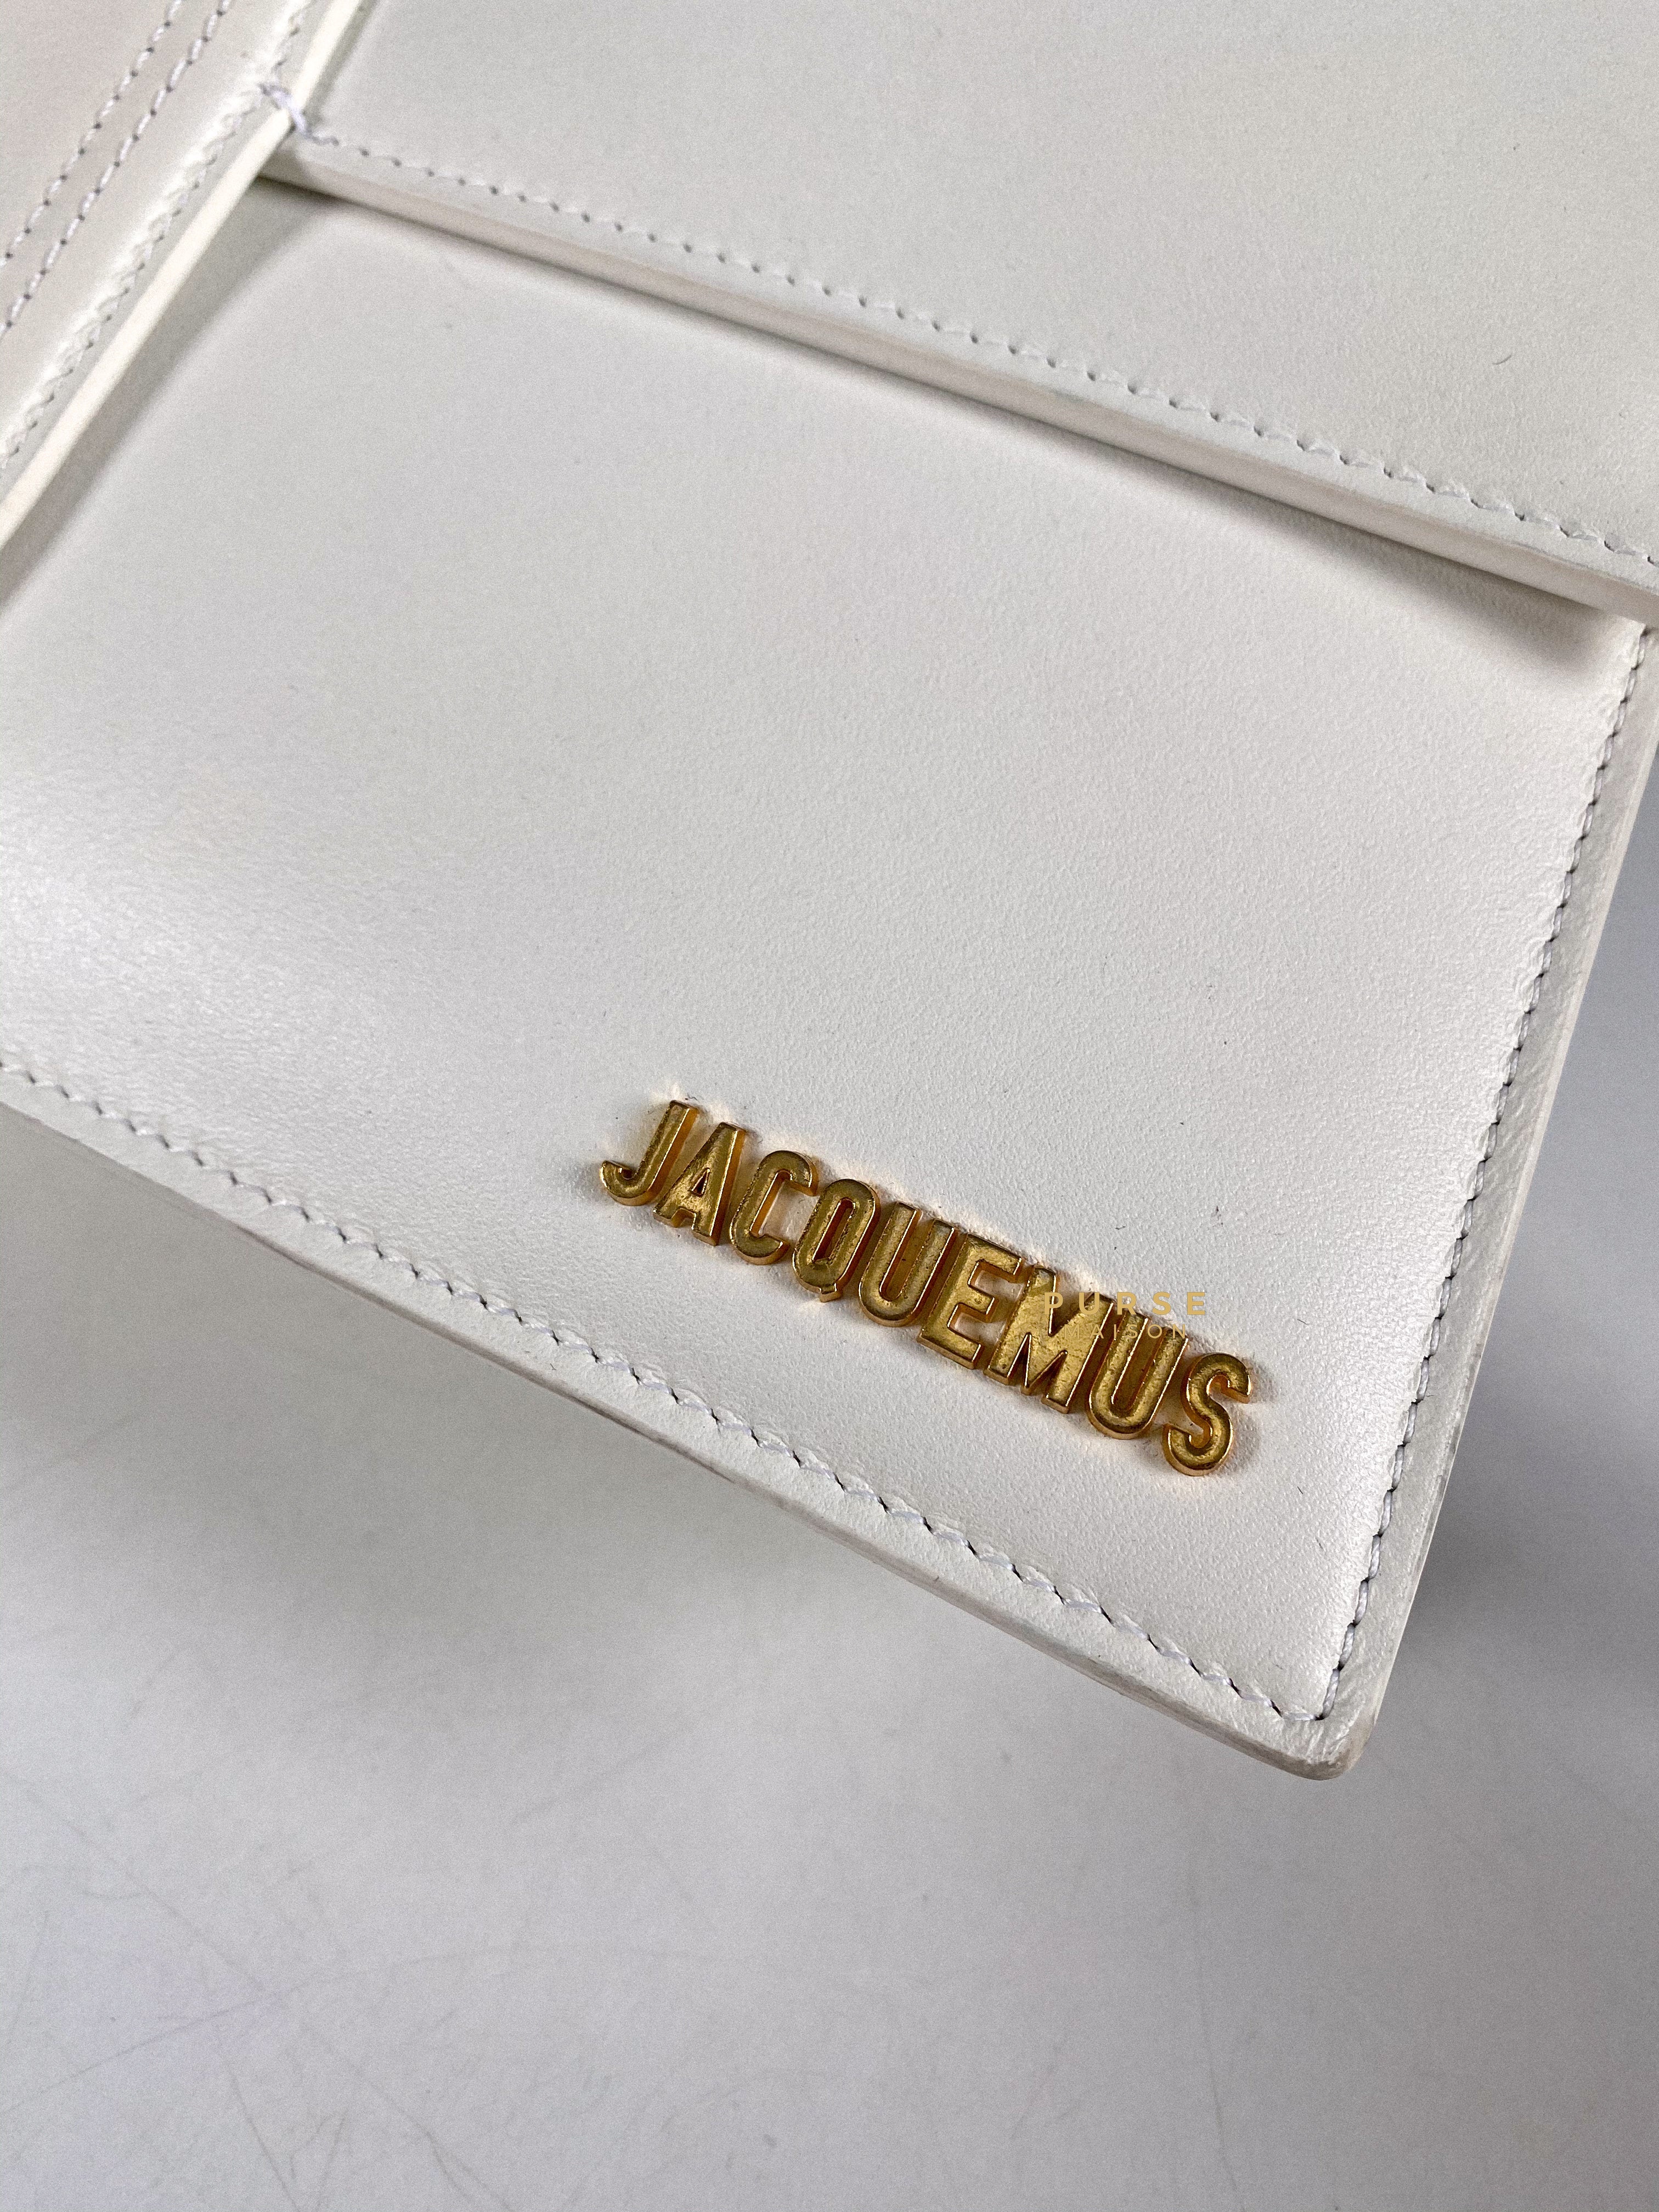 Jacquemus Le Bambinou Top Handle White | Purse Maison Luxury Bags Shop